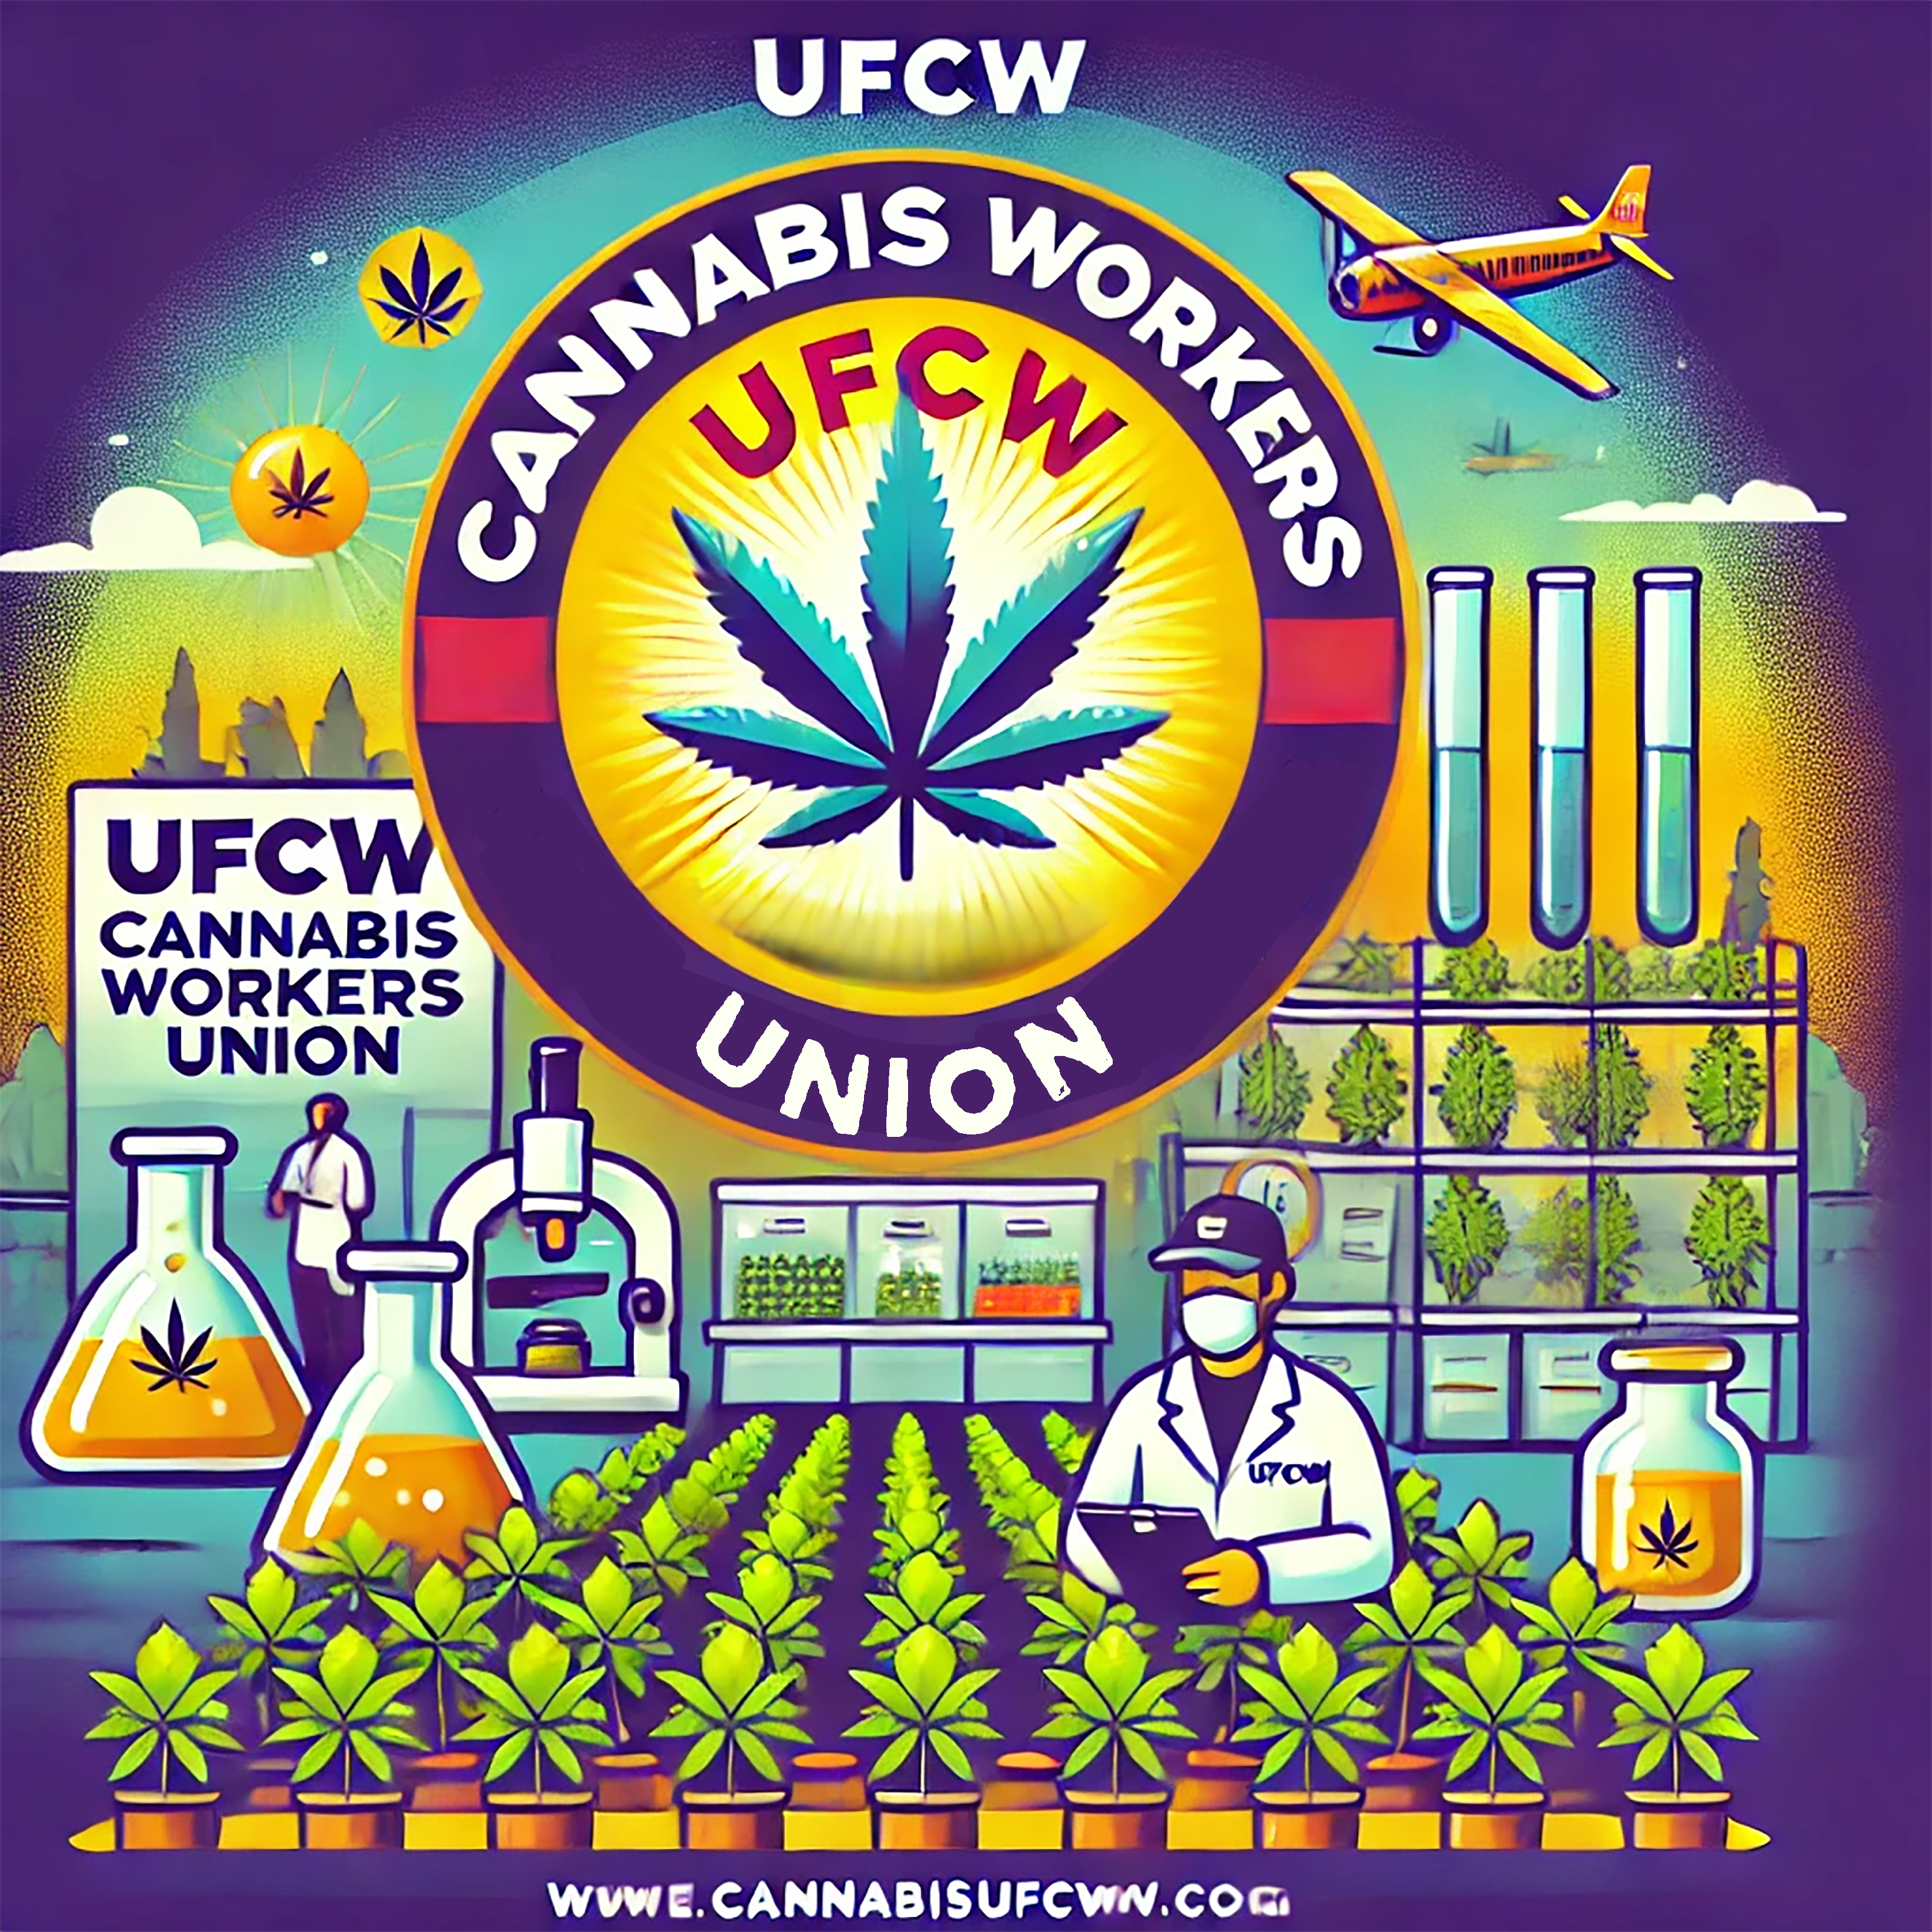 ufcw cannabis workers union arizona